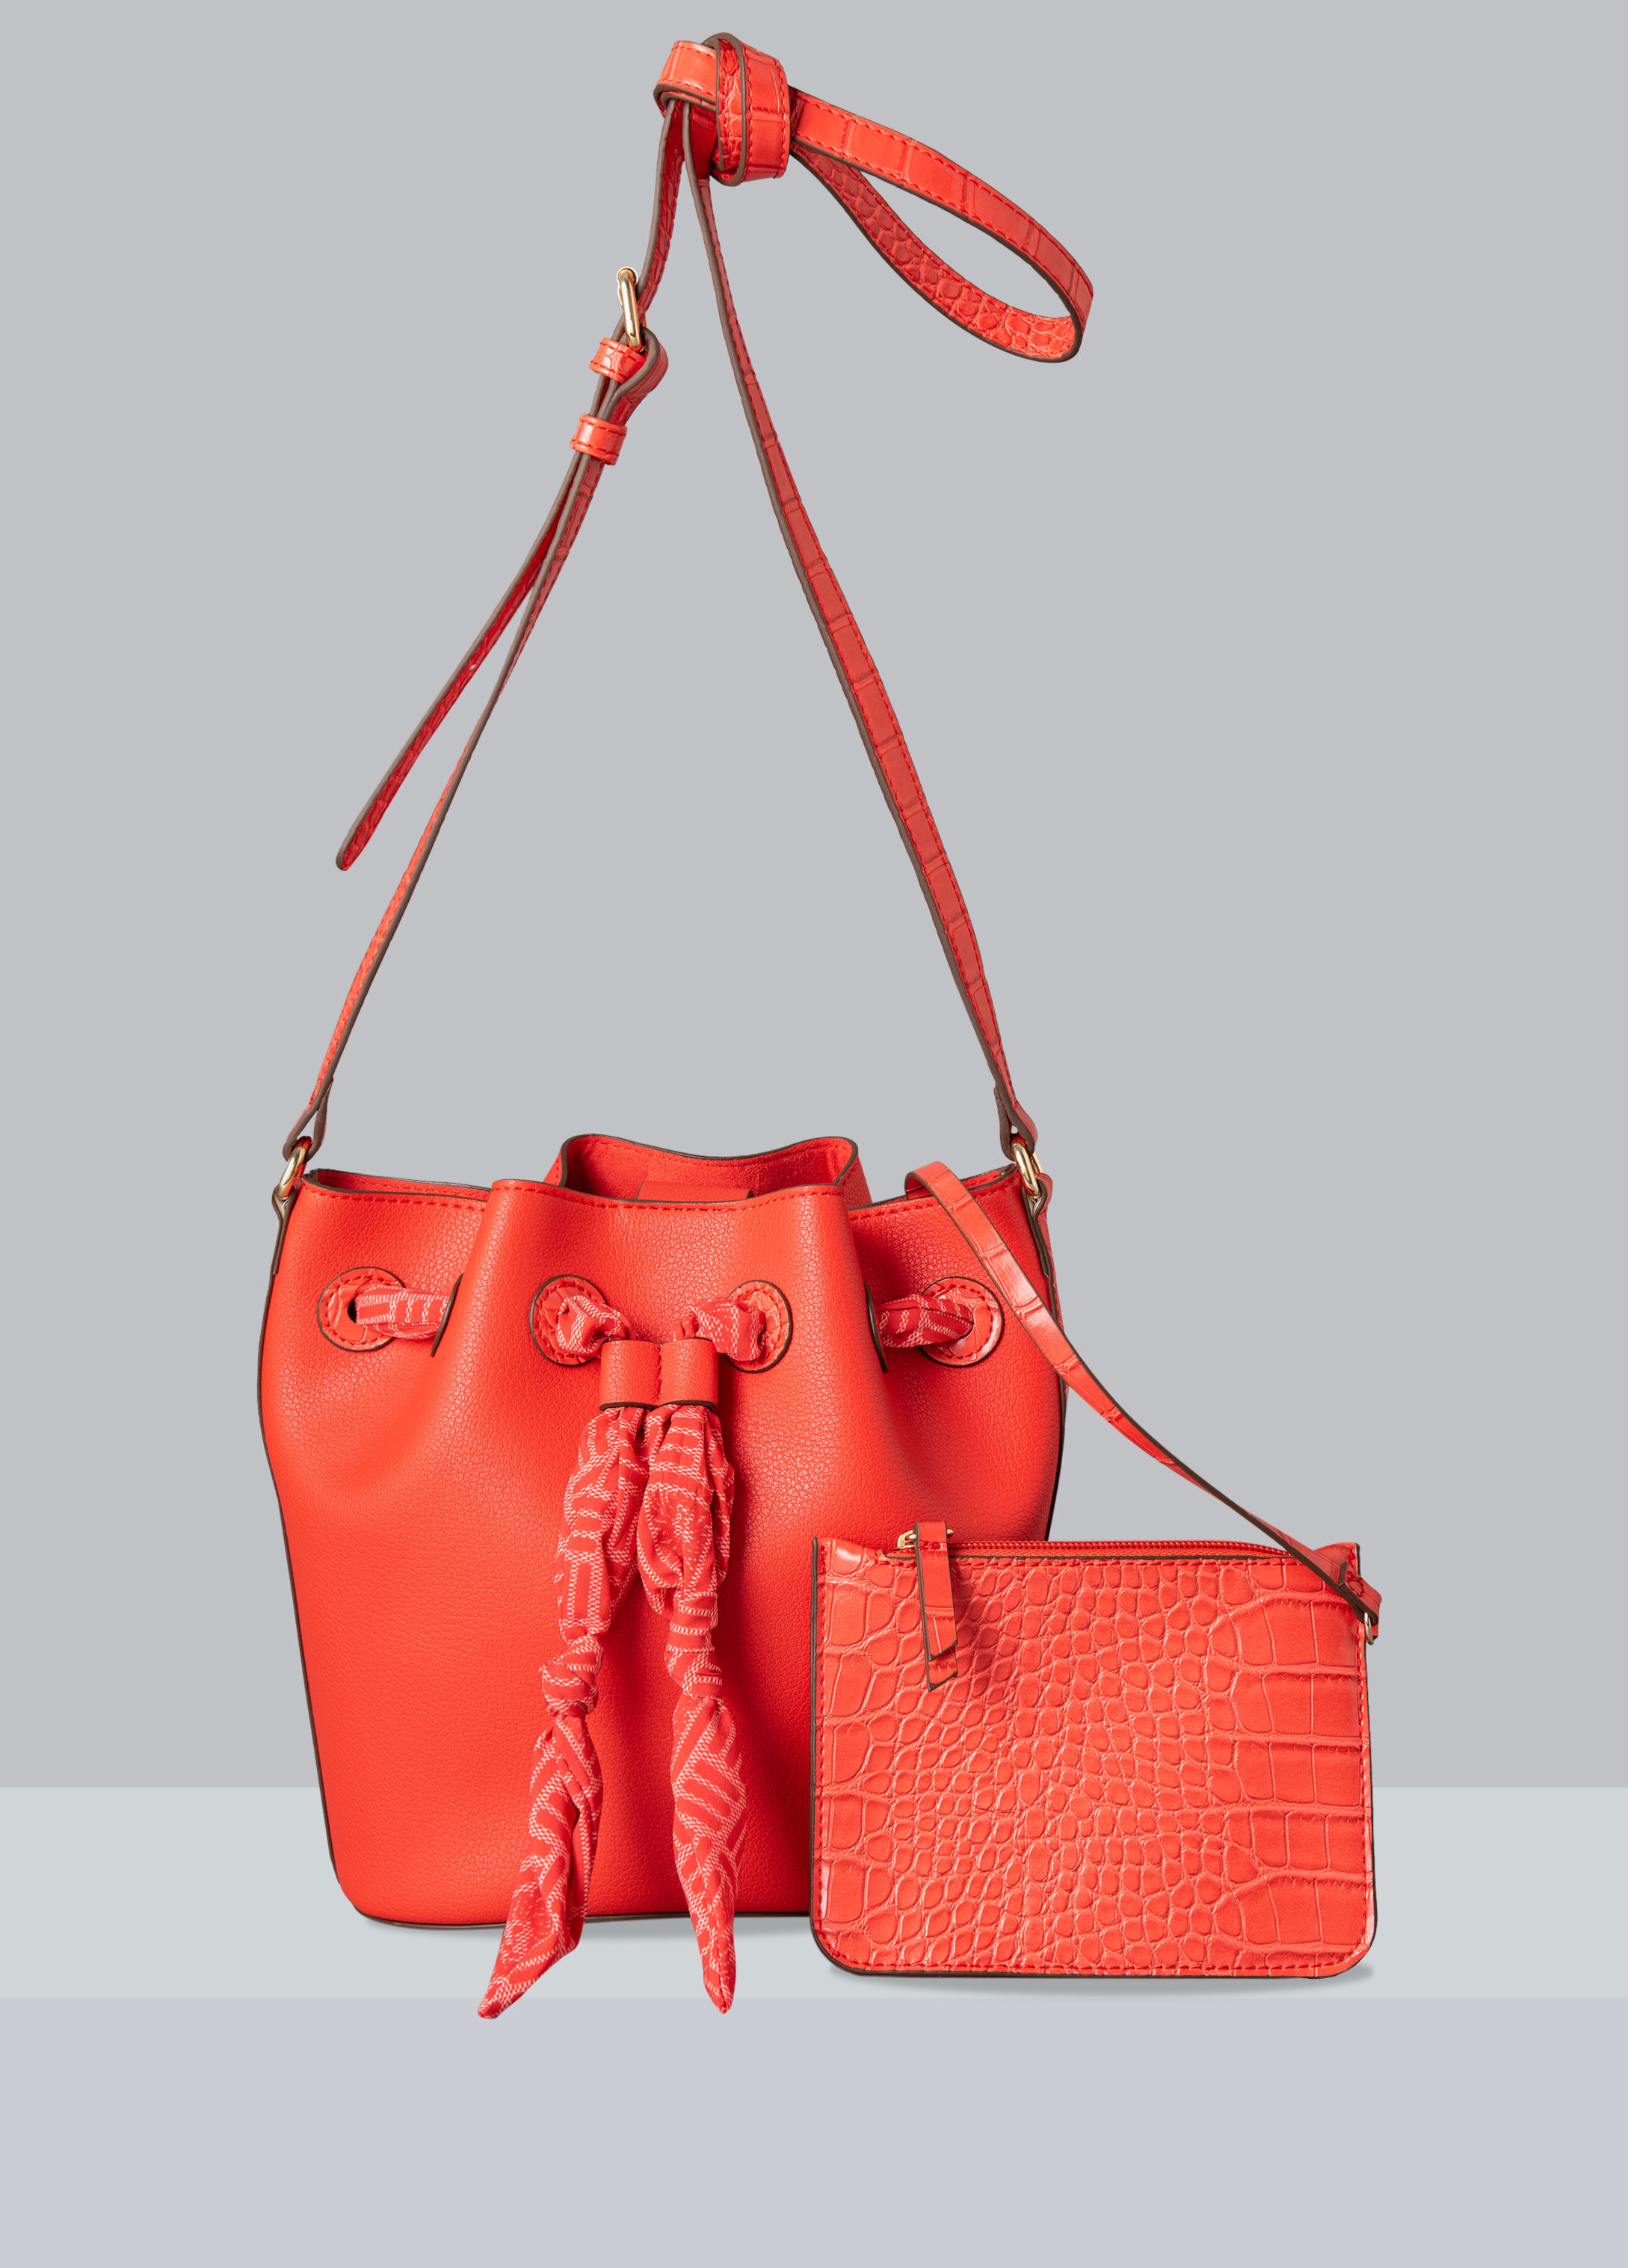 Ann Klein purse | Anne klein bag, Red shoulder bags, Purses